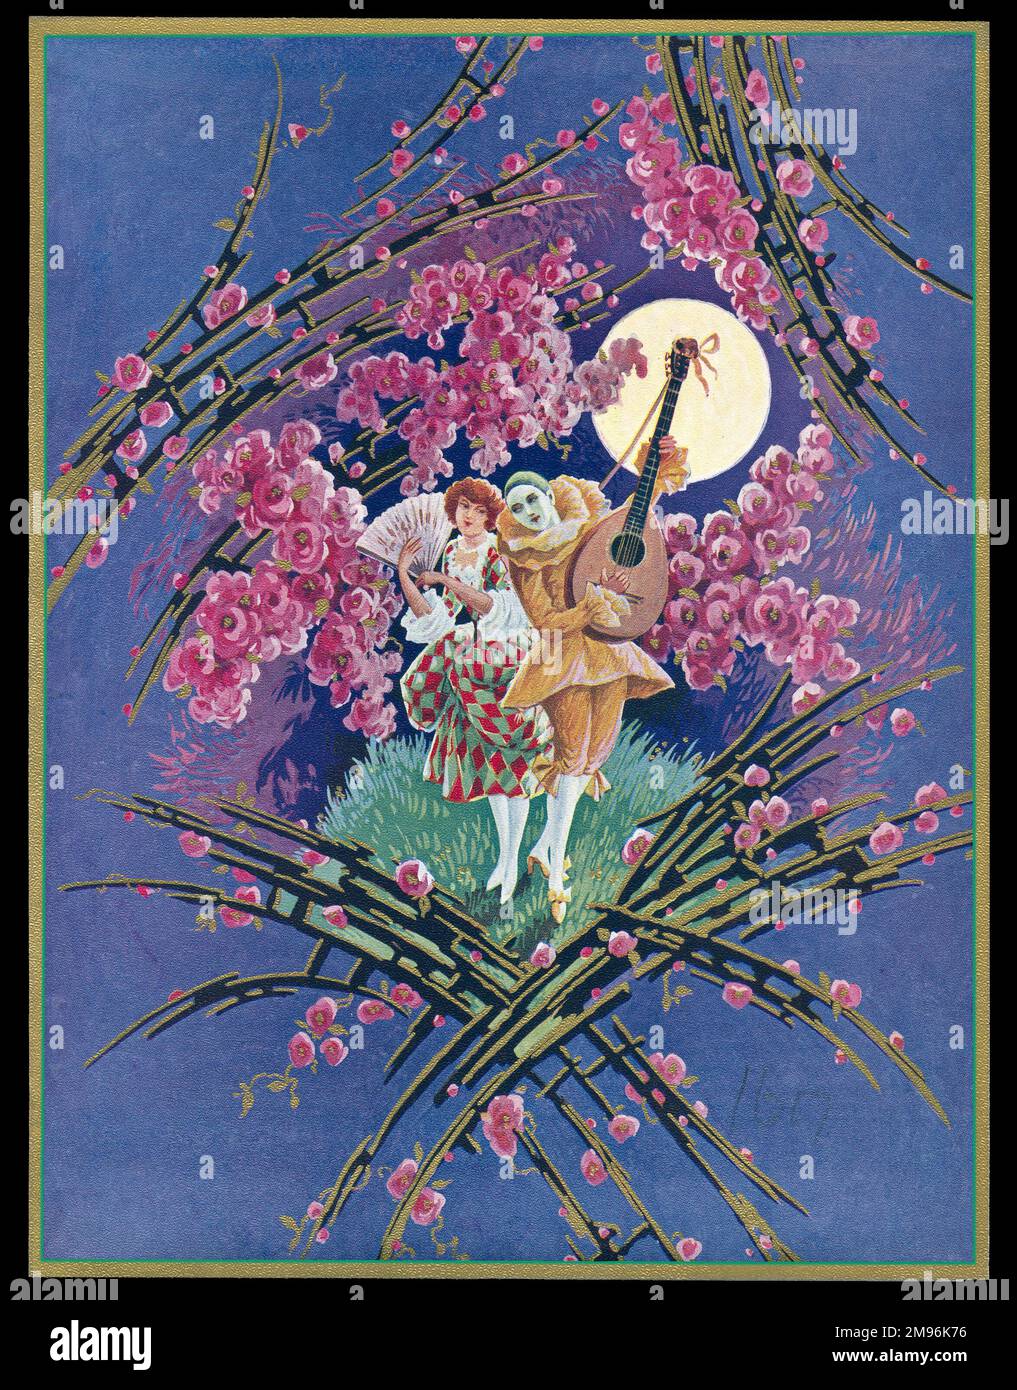 Boîte au chocolat, représentant un pierrot serenrade une arlequin femelle à la lumière de la lune, entourée de fleurs roses. Banque D'Images